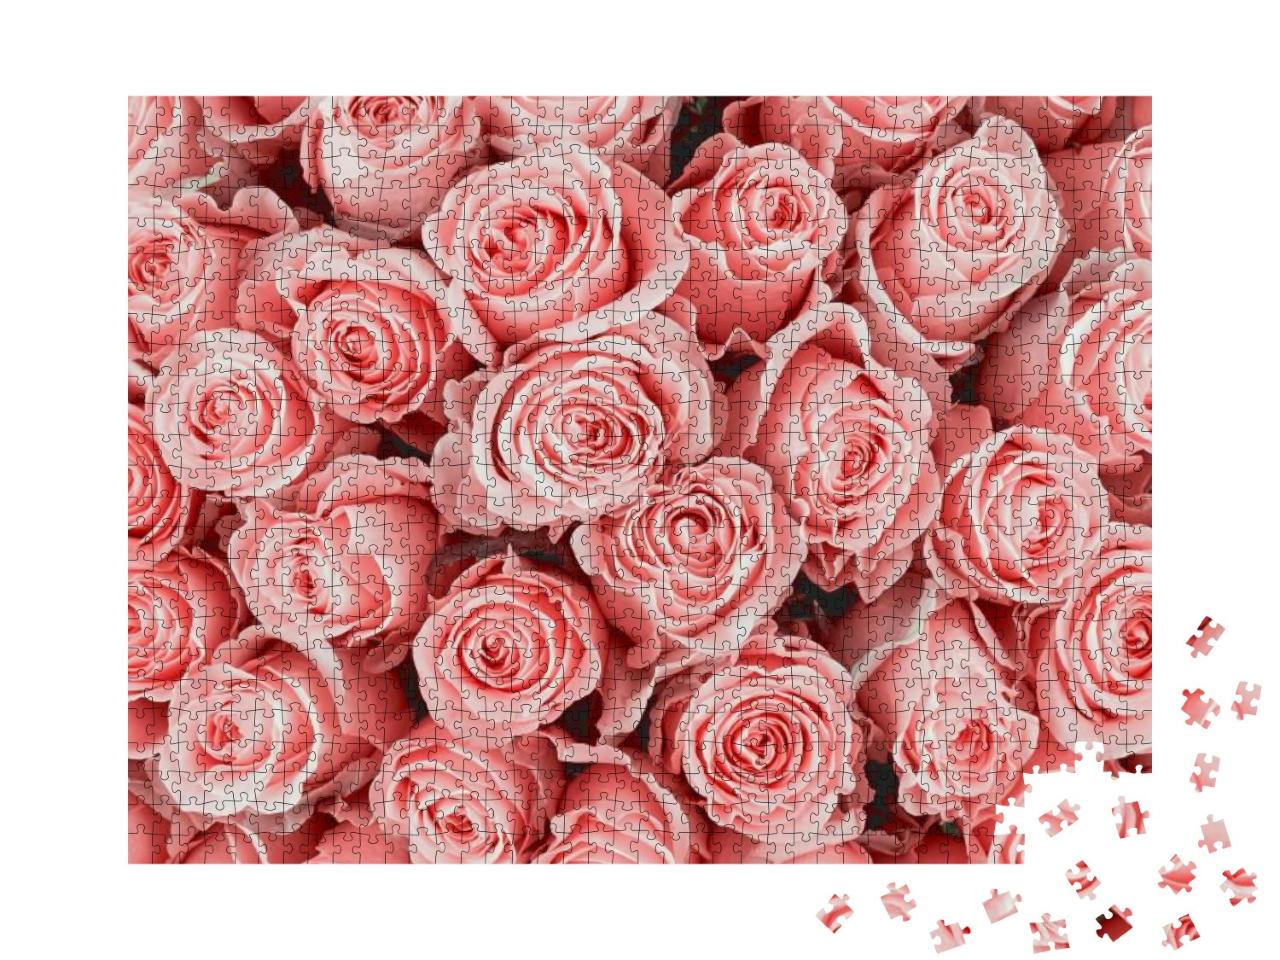 Puzzle 1000 Teile „Rosa Rosen“